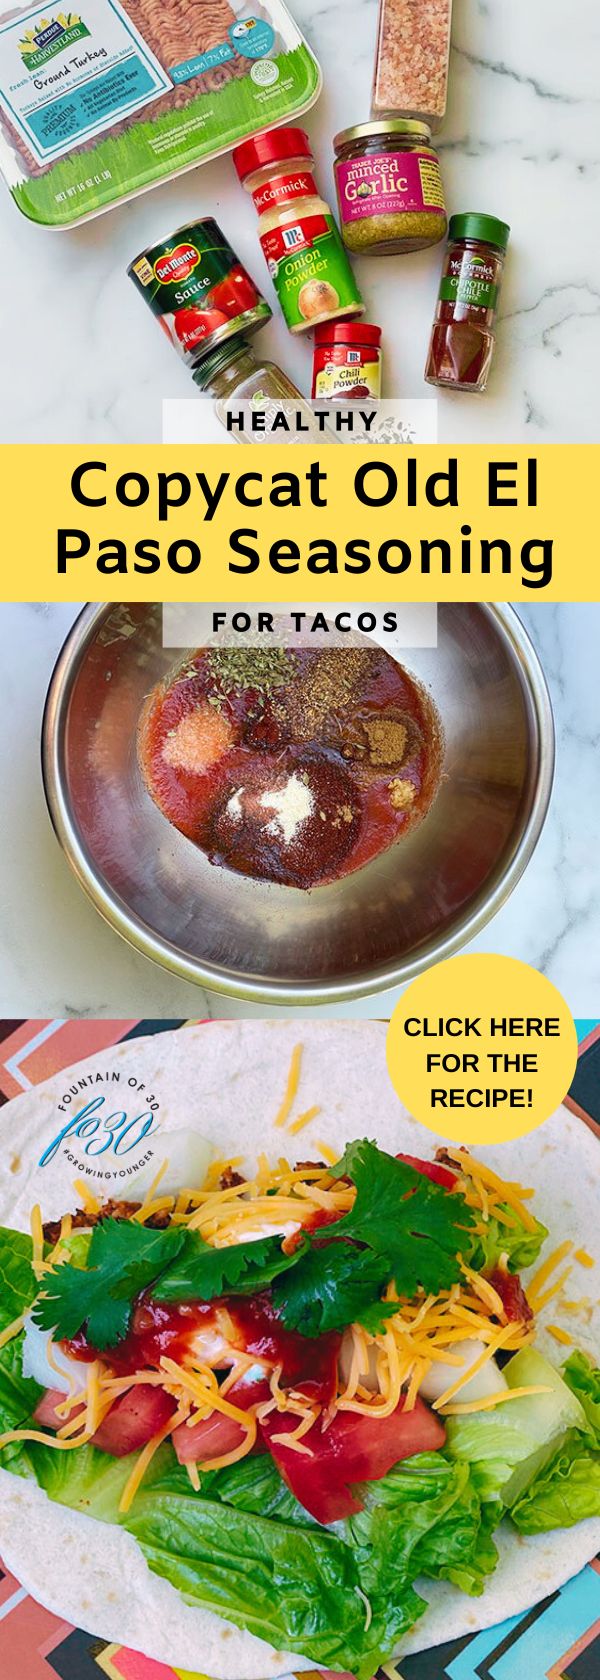 Healhty copucat Old El Paso Copycat Seasoning for Tacos fountainof30